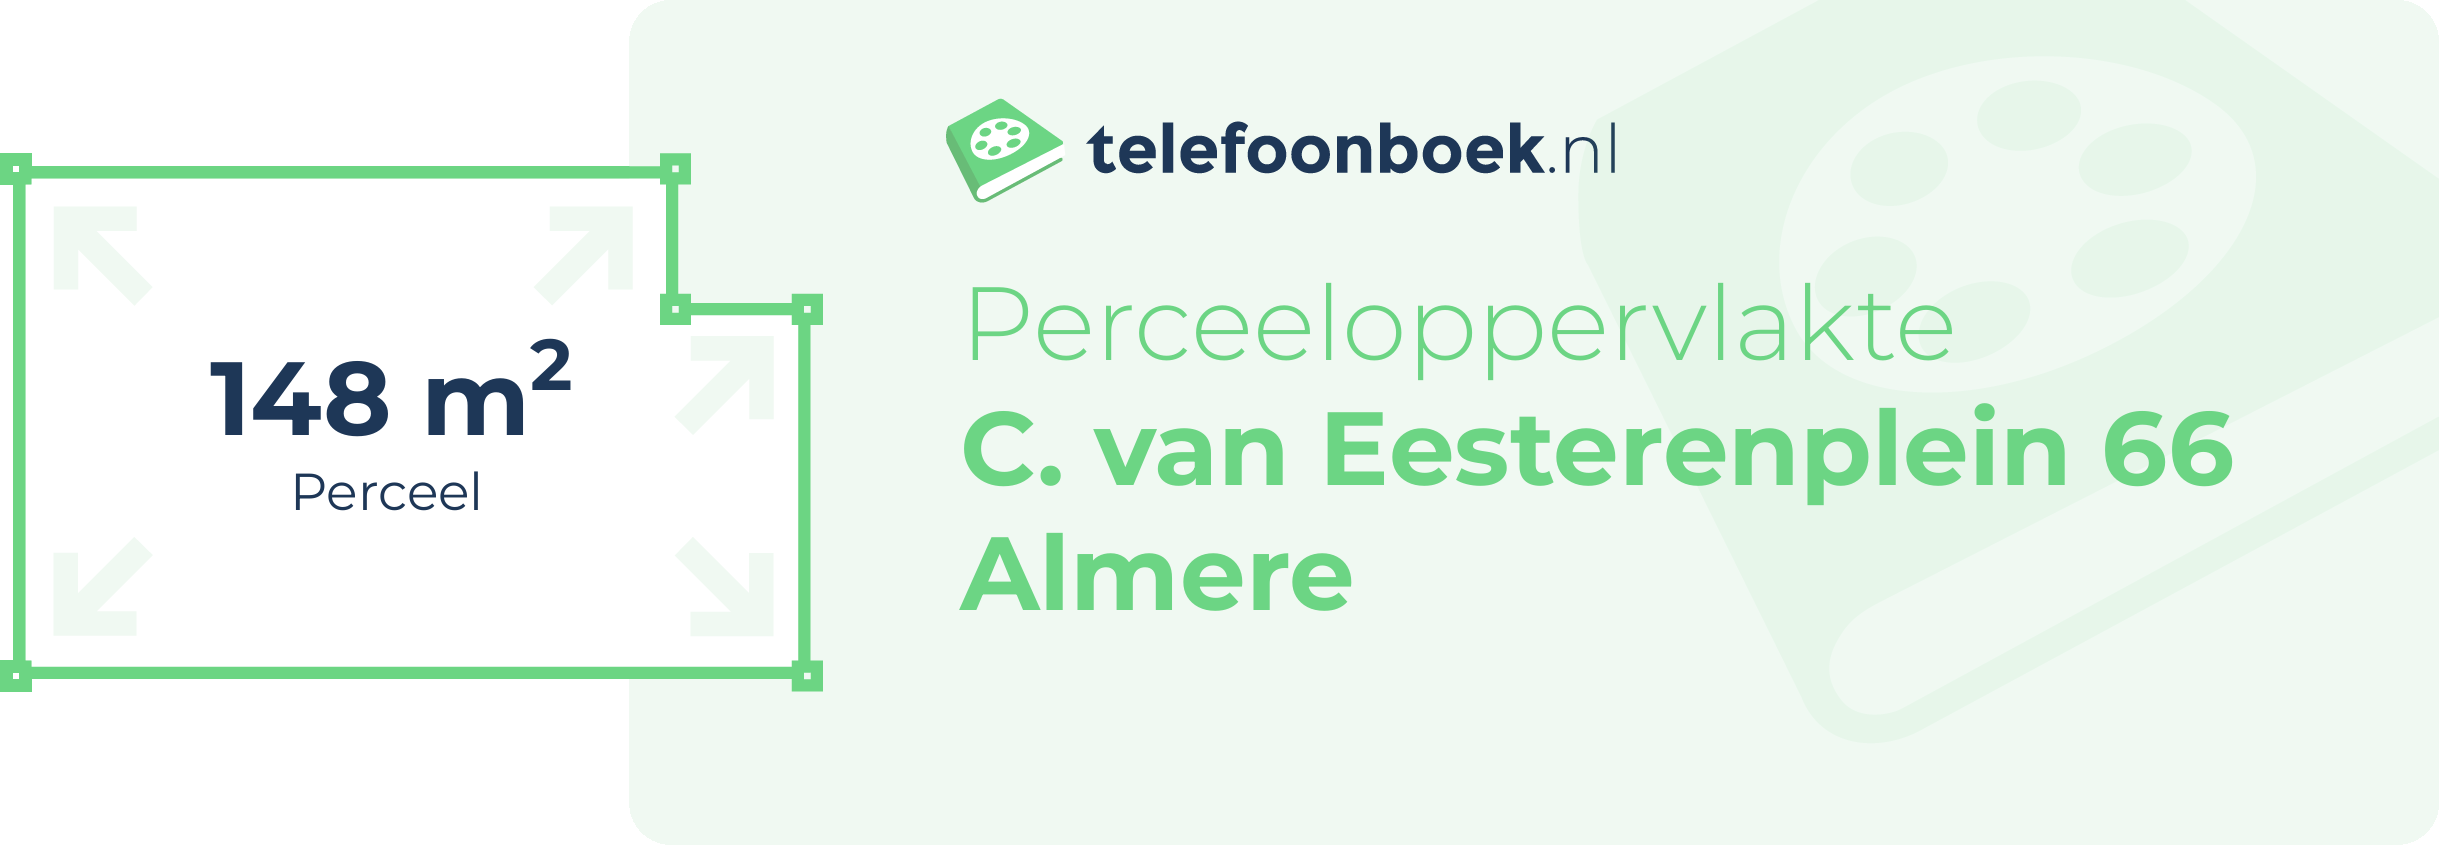 Perceeloppervlakte C. Van Eesterenplein 66 Almere